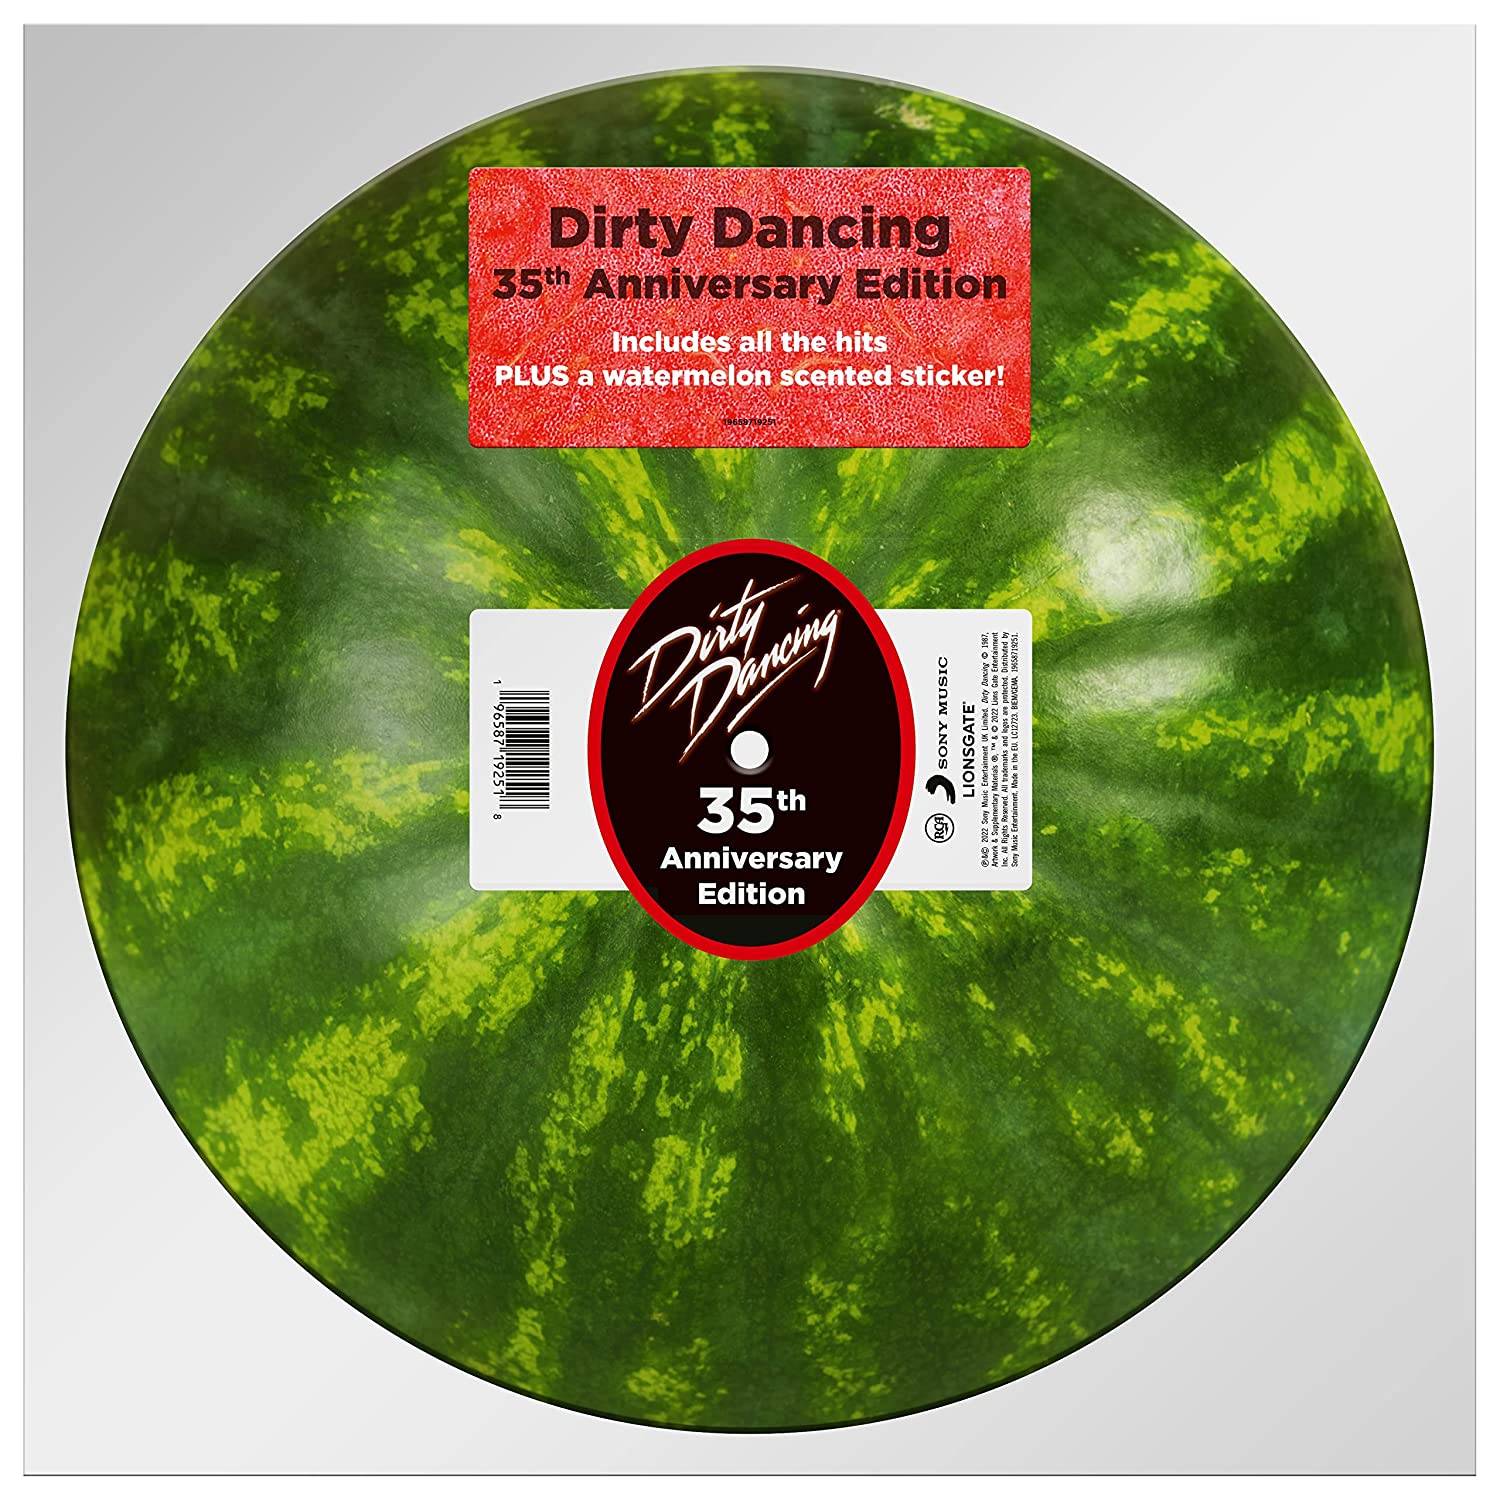 Саундтрек RCA Сборник - Dirty Dancing: 35th Anniversary Edition (Limited Picture Vinyl LP) коллекция paramount платиновое издание том 4 триллеры